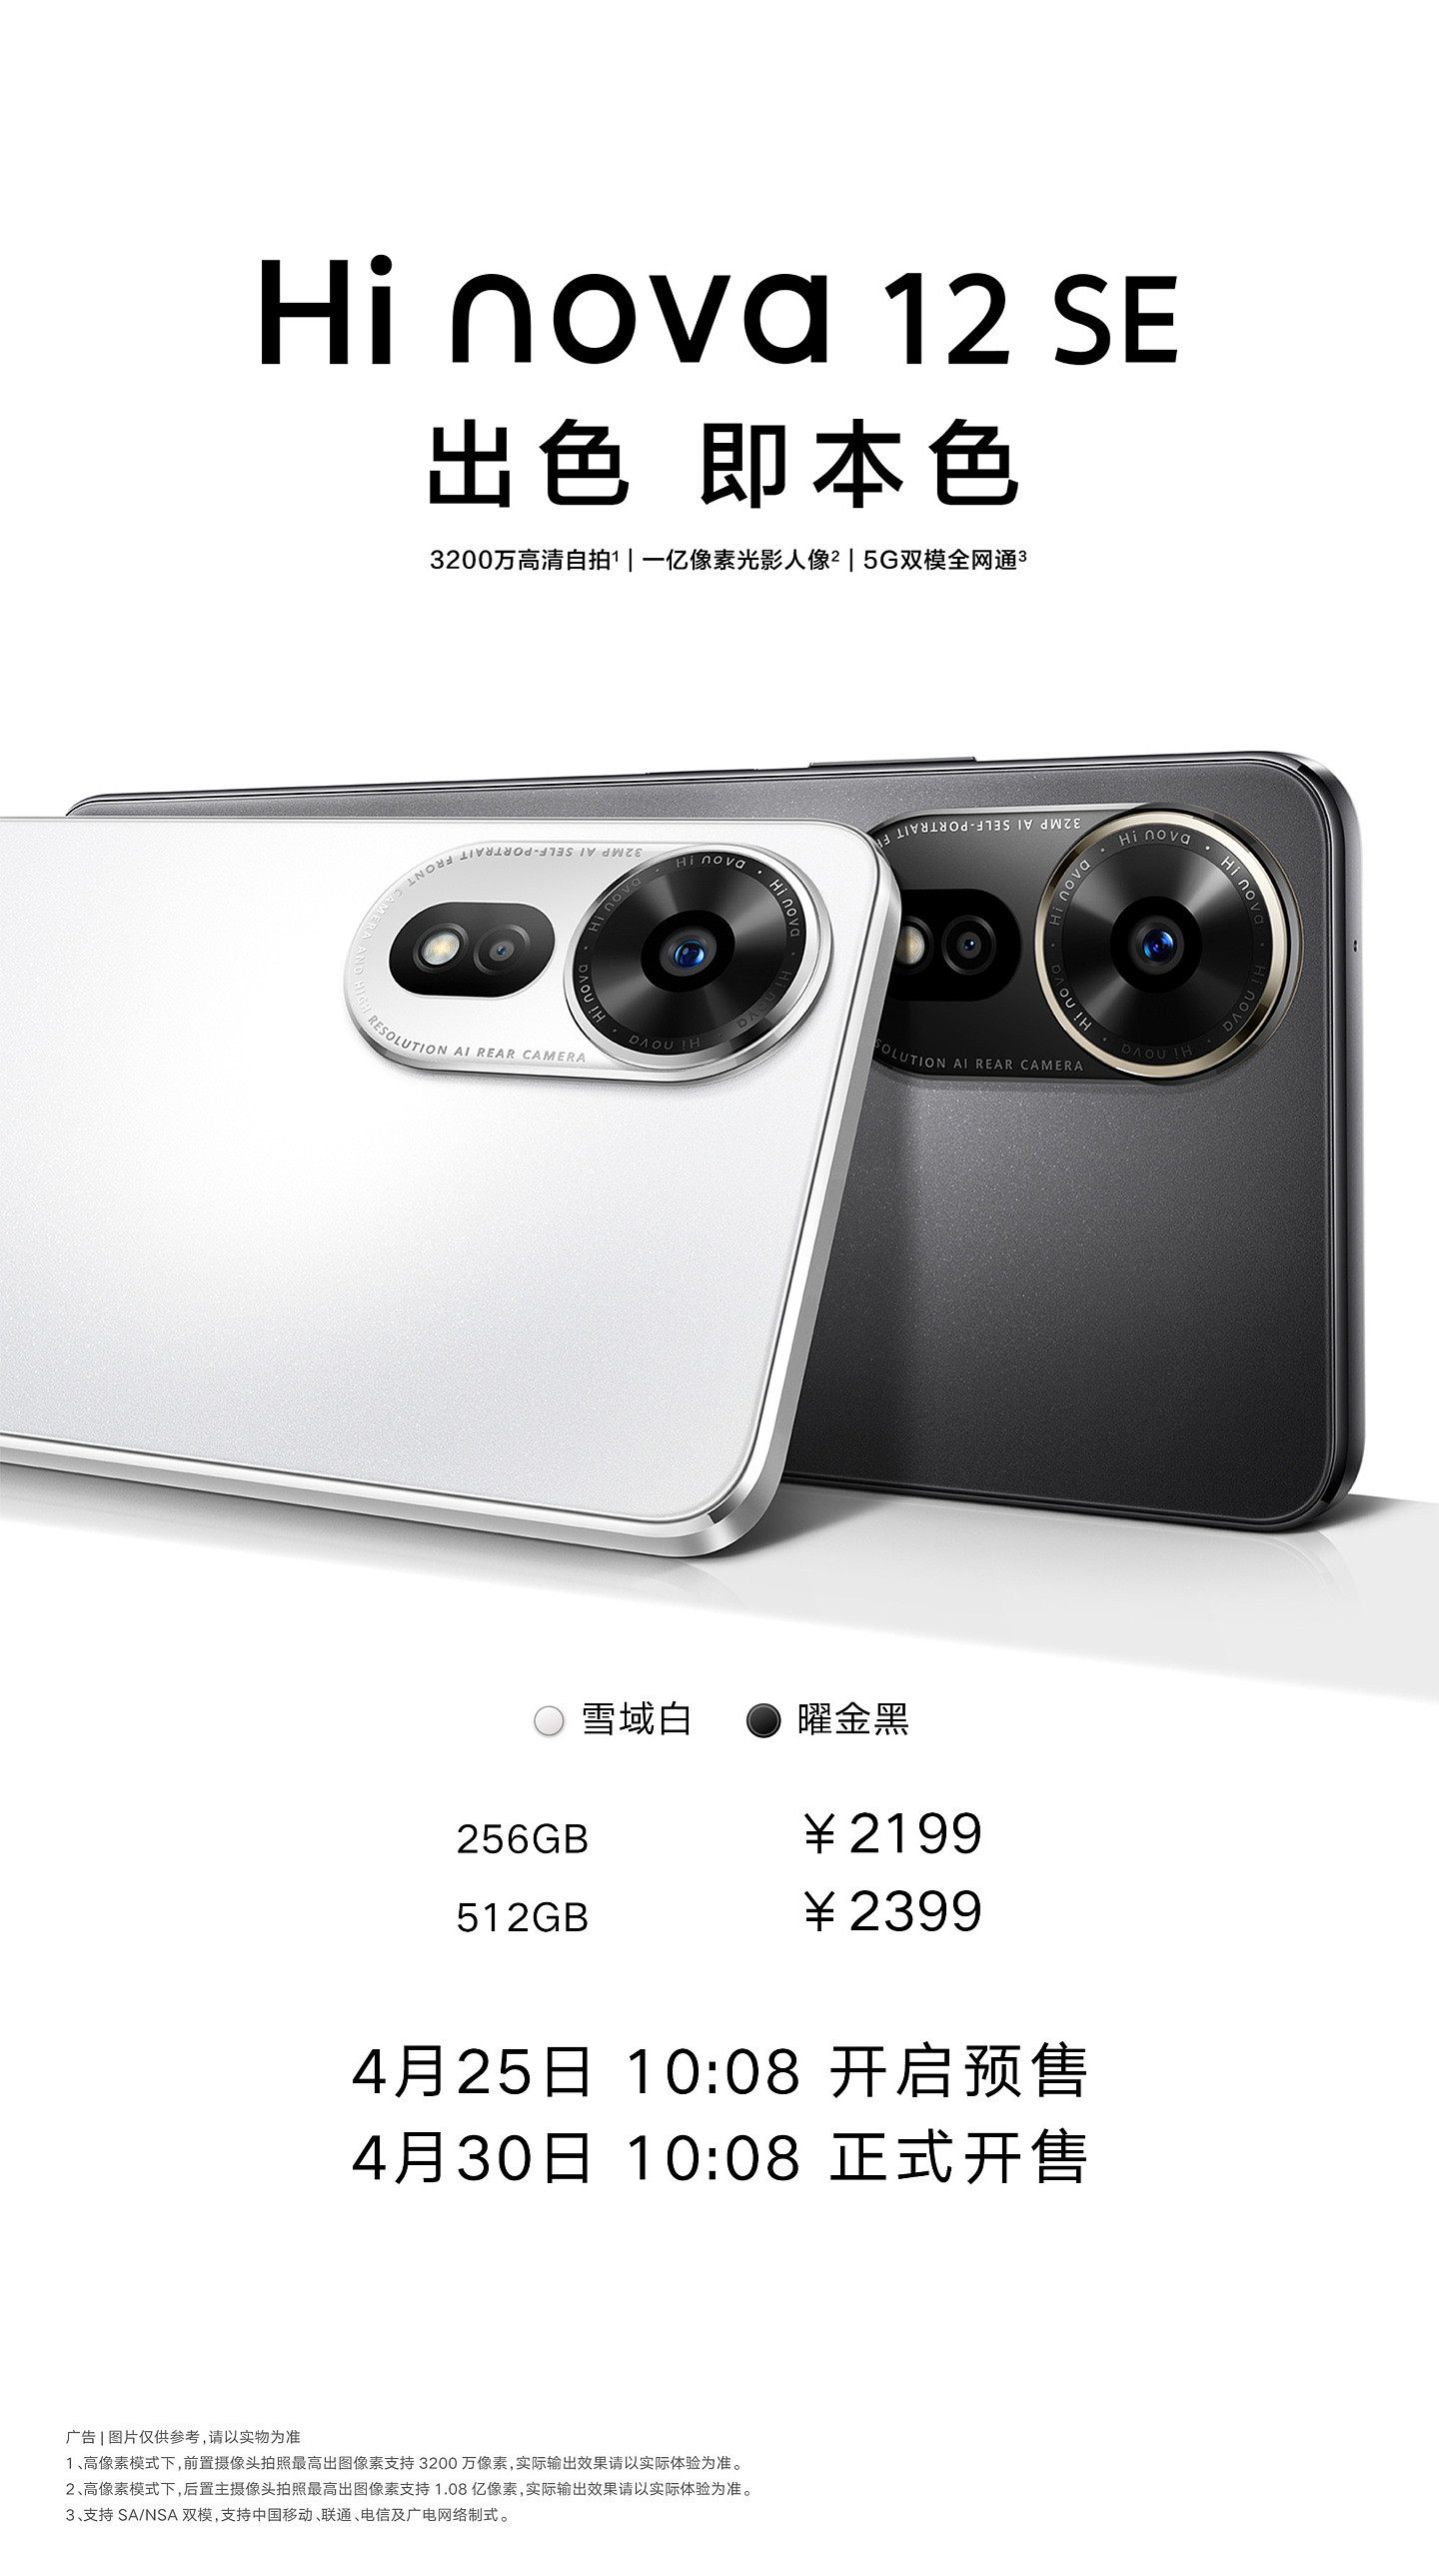 中邮通信 Hi nova 12 SE 手机发布，2199 元起 - 1